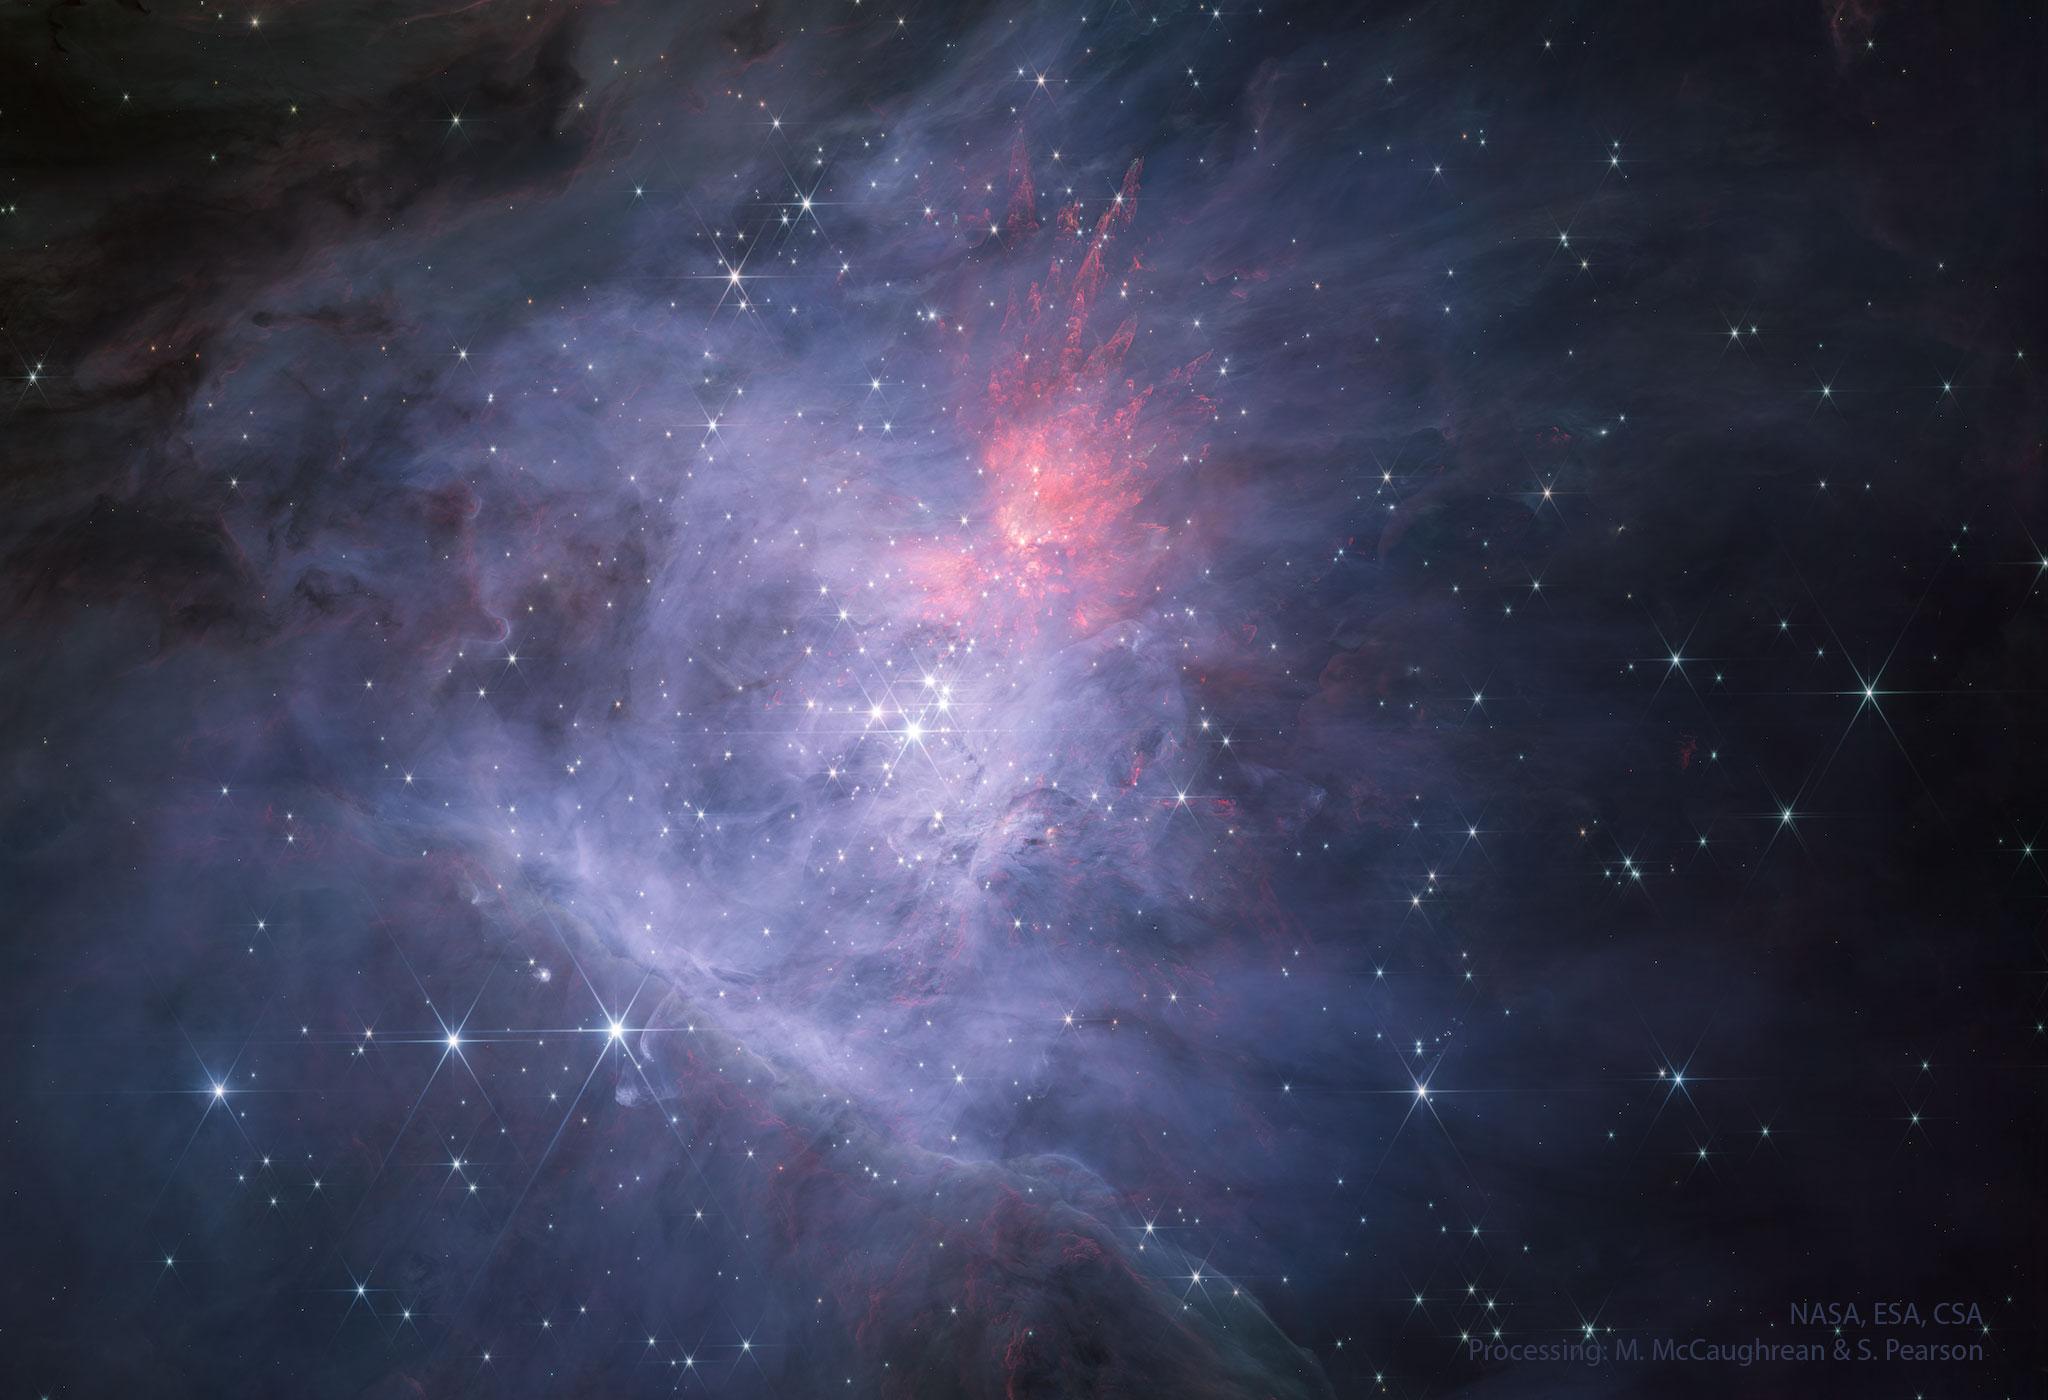 مركز سديم الجبّار في الضوء تحت الأحمر القريب كما صُوِّرَ بواسطة تلسكوب جيمس وِبّ الفضائيّ. في المركز يوجد عنقود نجوم المُعيَّن.